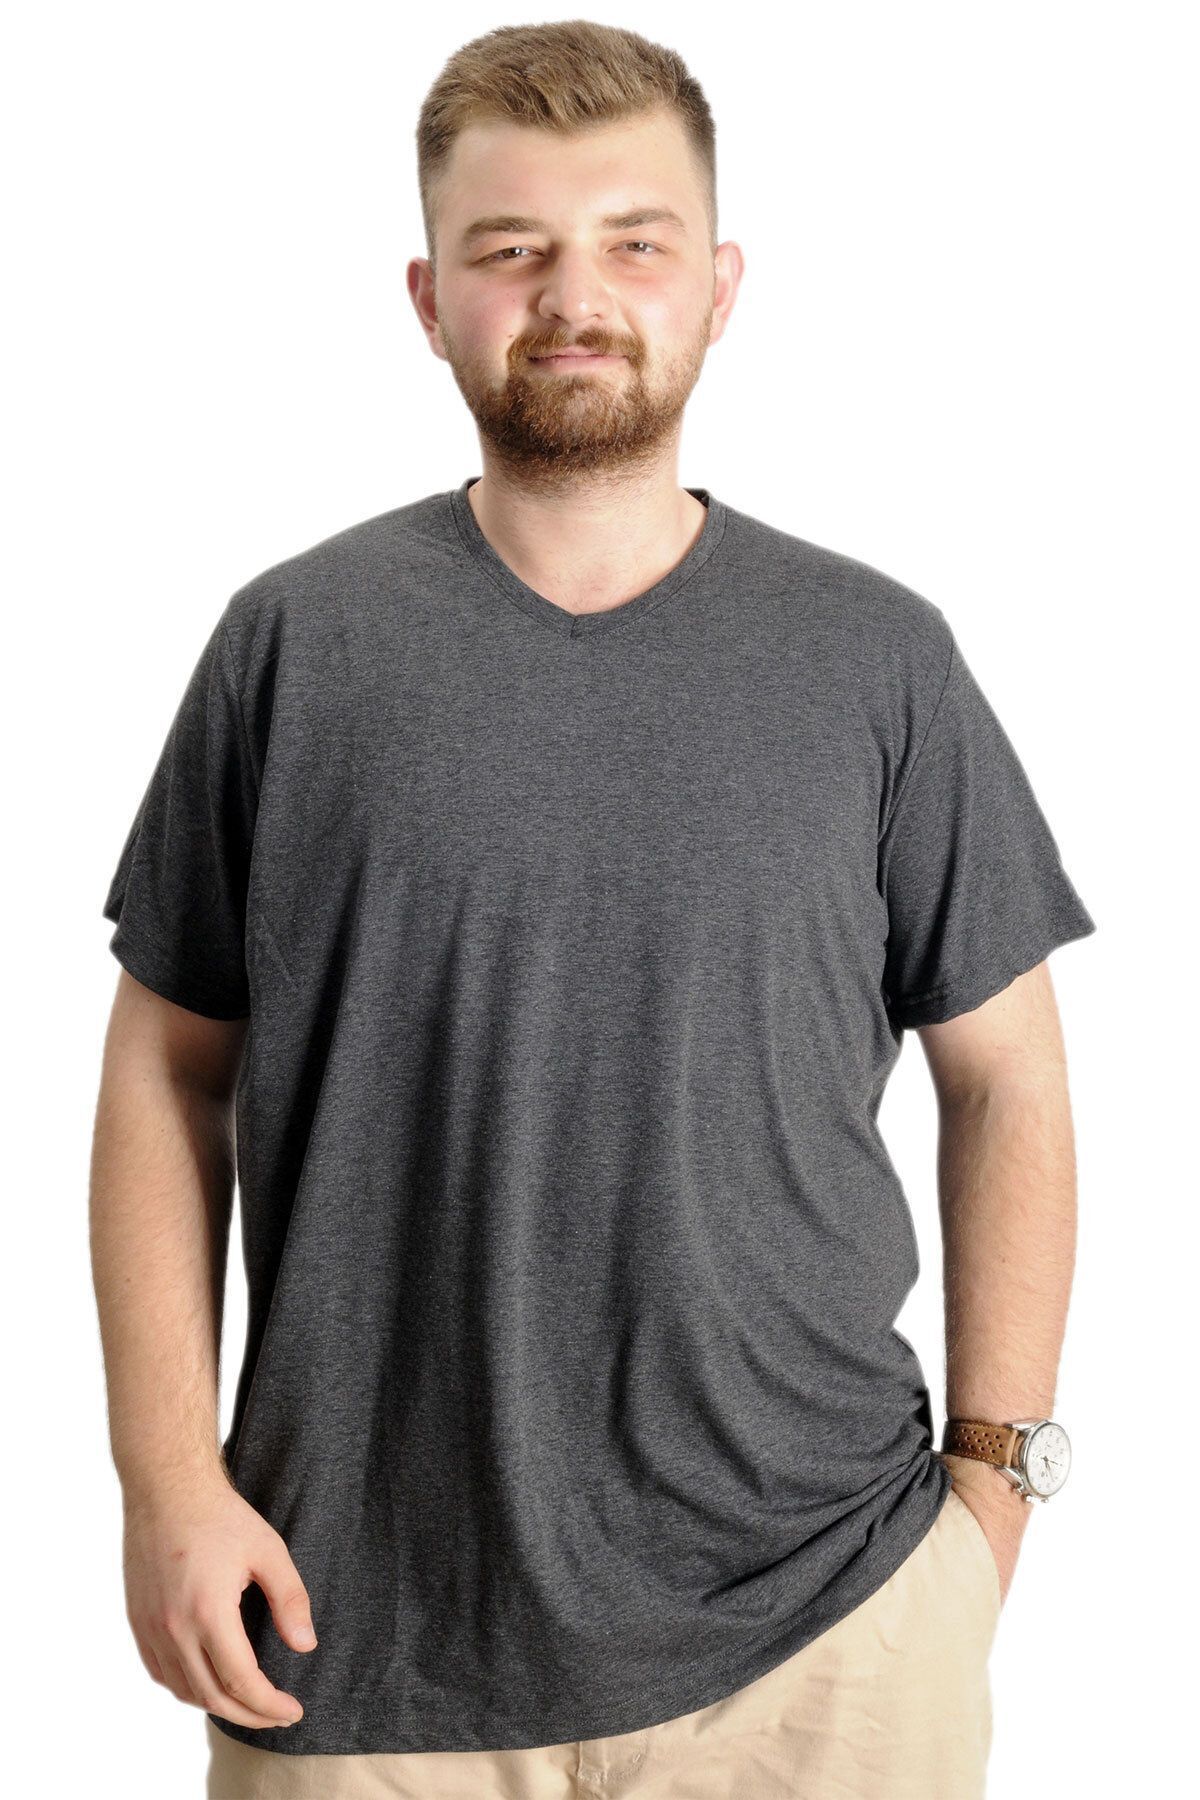 Modexl Mode Xl Büyük Beden Erkek T-shirt Super V Yaka Basic 20150 Antramelanj